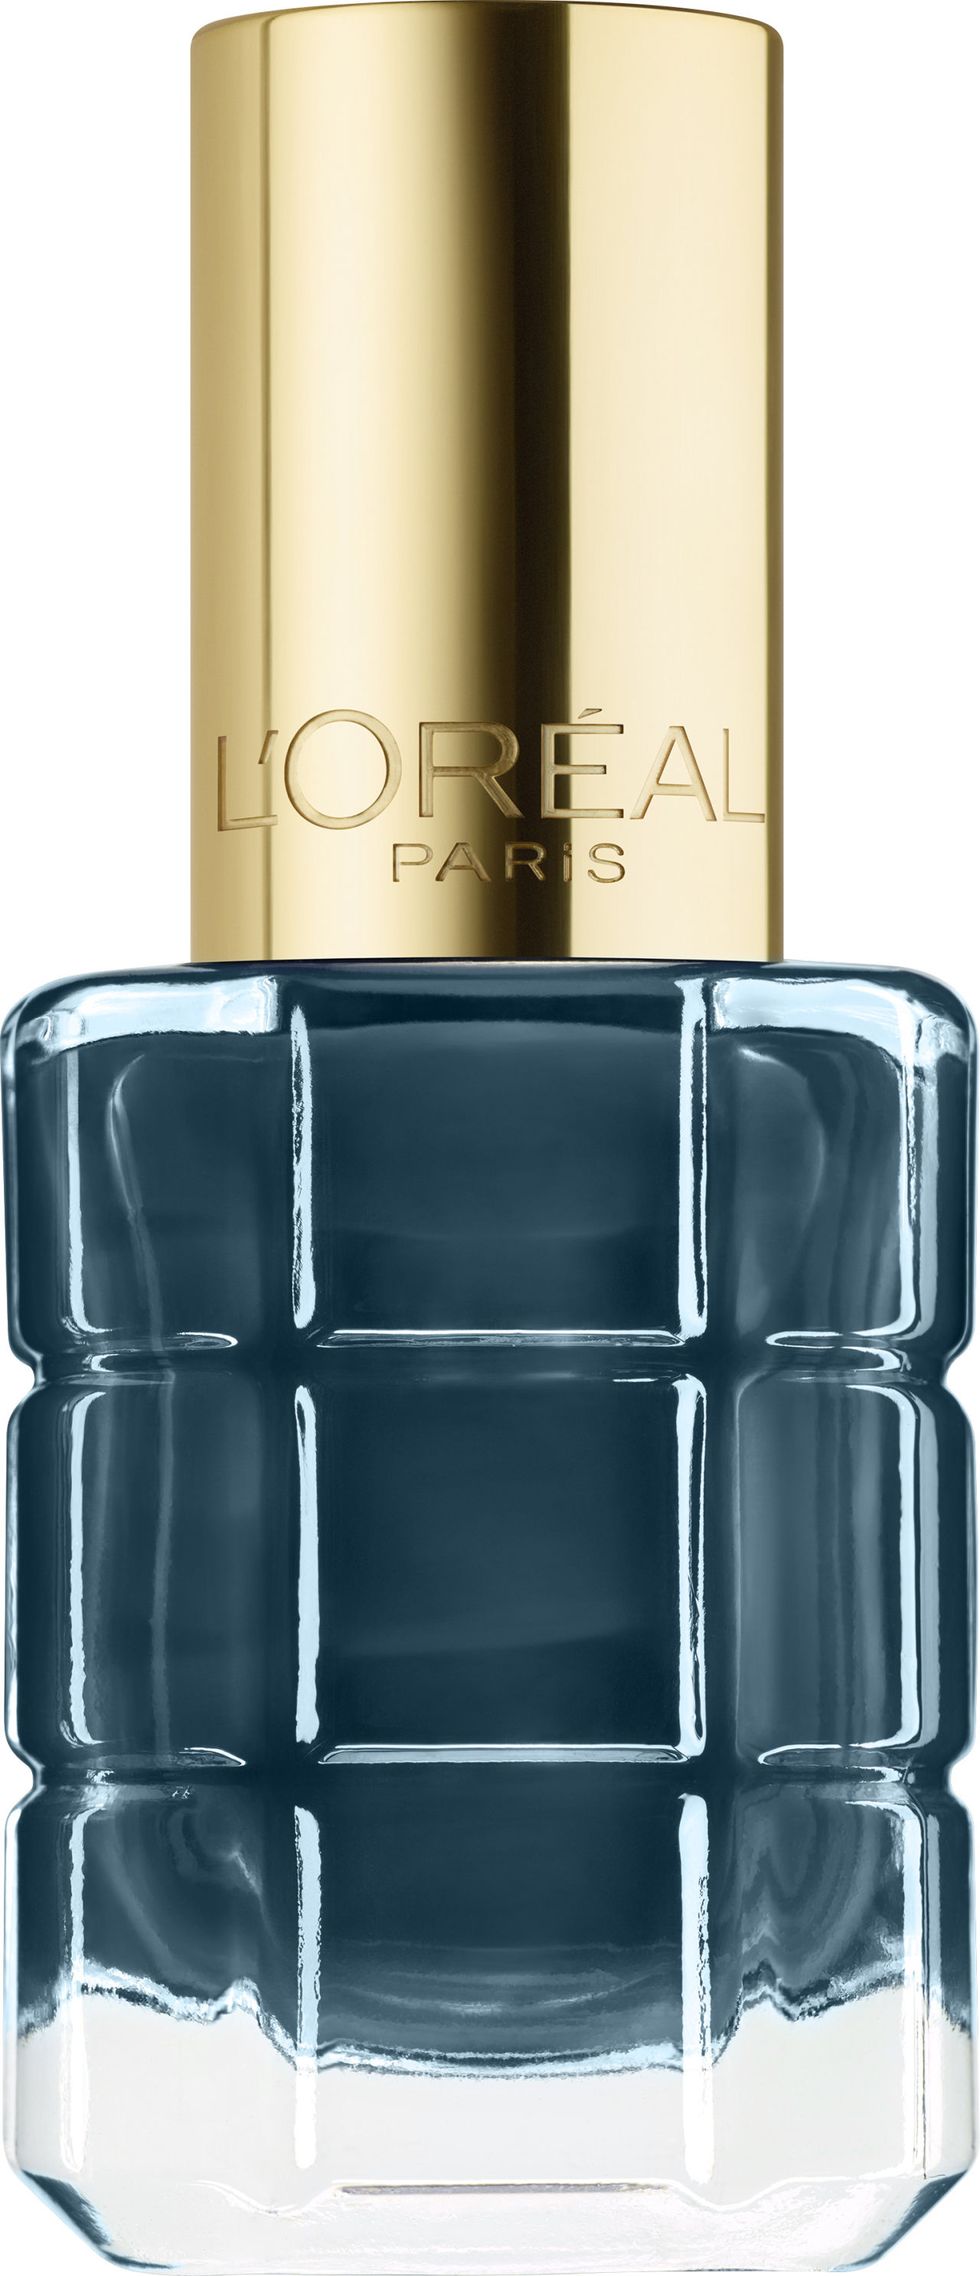 <p>L'Oréal Paris Color Riche Colore ad Olio, nuance Cobalt Indecent N.670.</p>